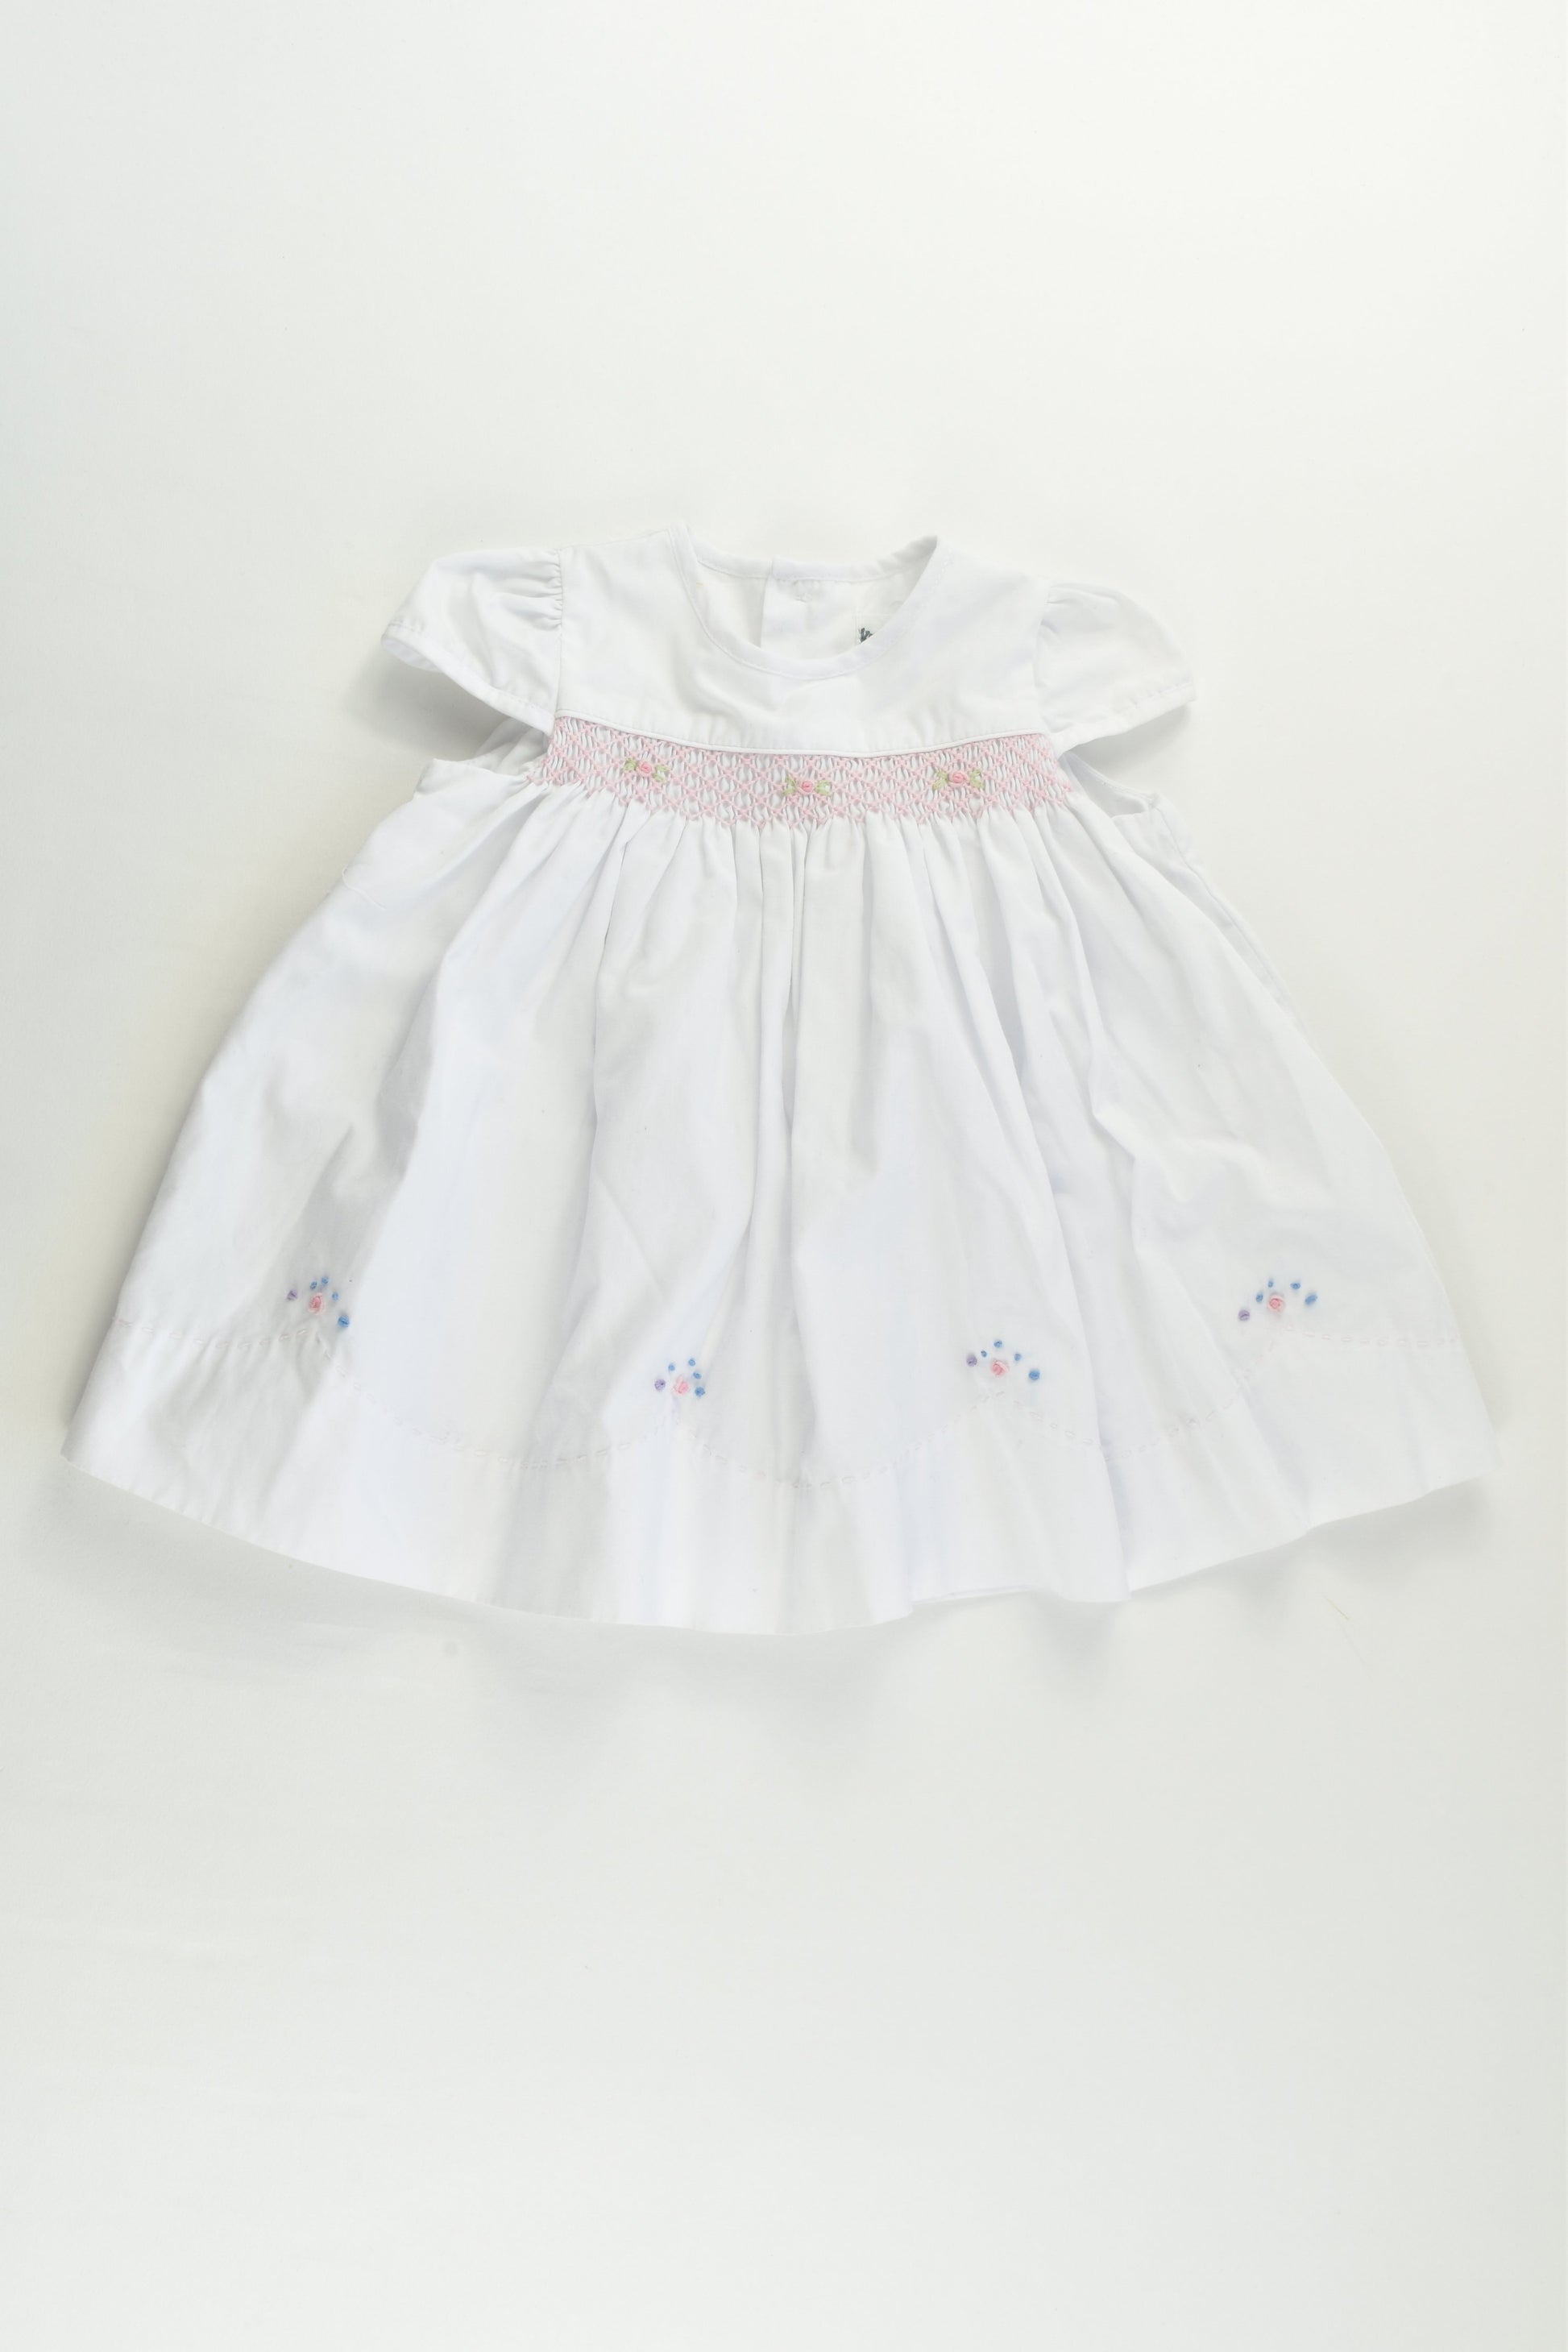 Korango (AU) Size 000 (0-3 months) Lined Smocked Dress